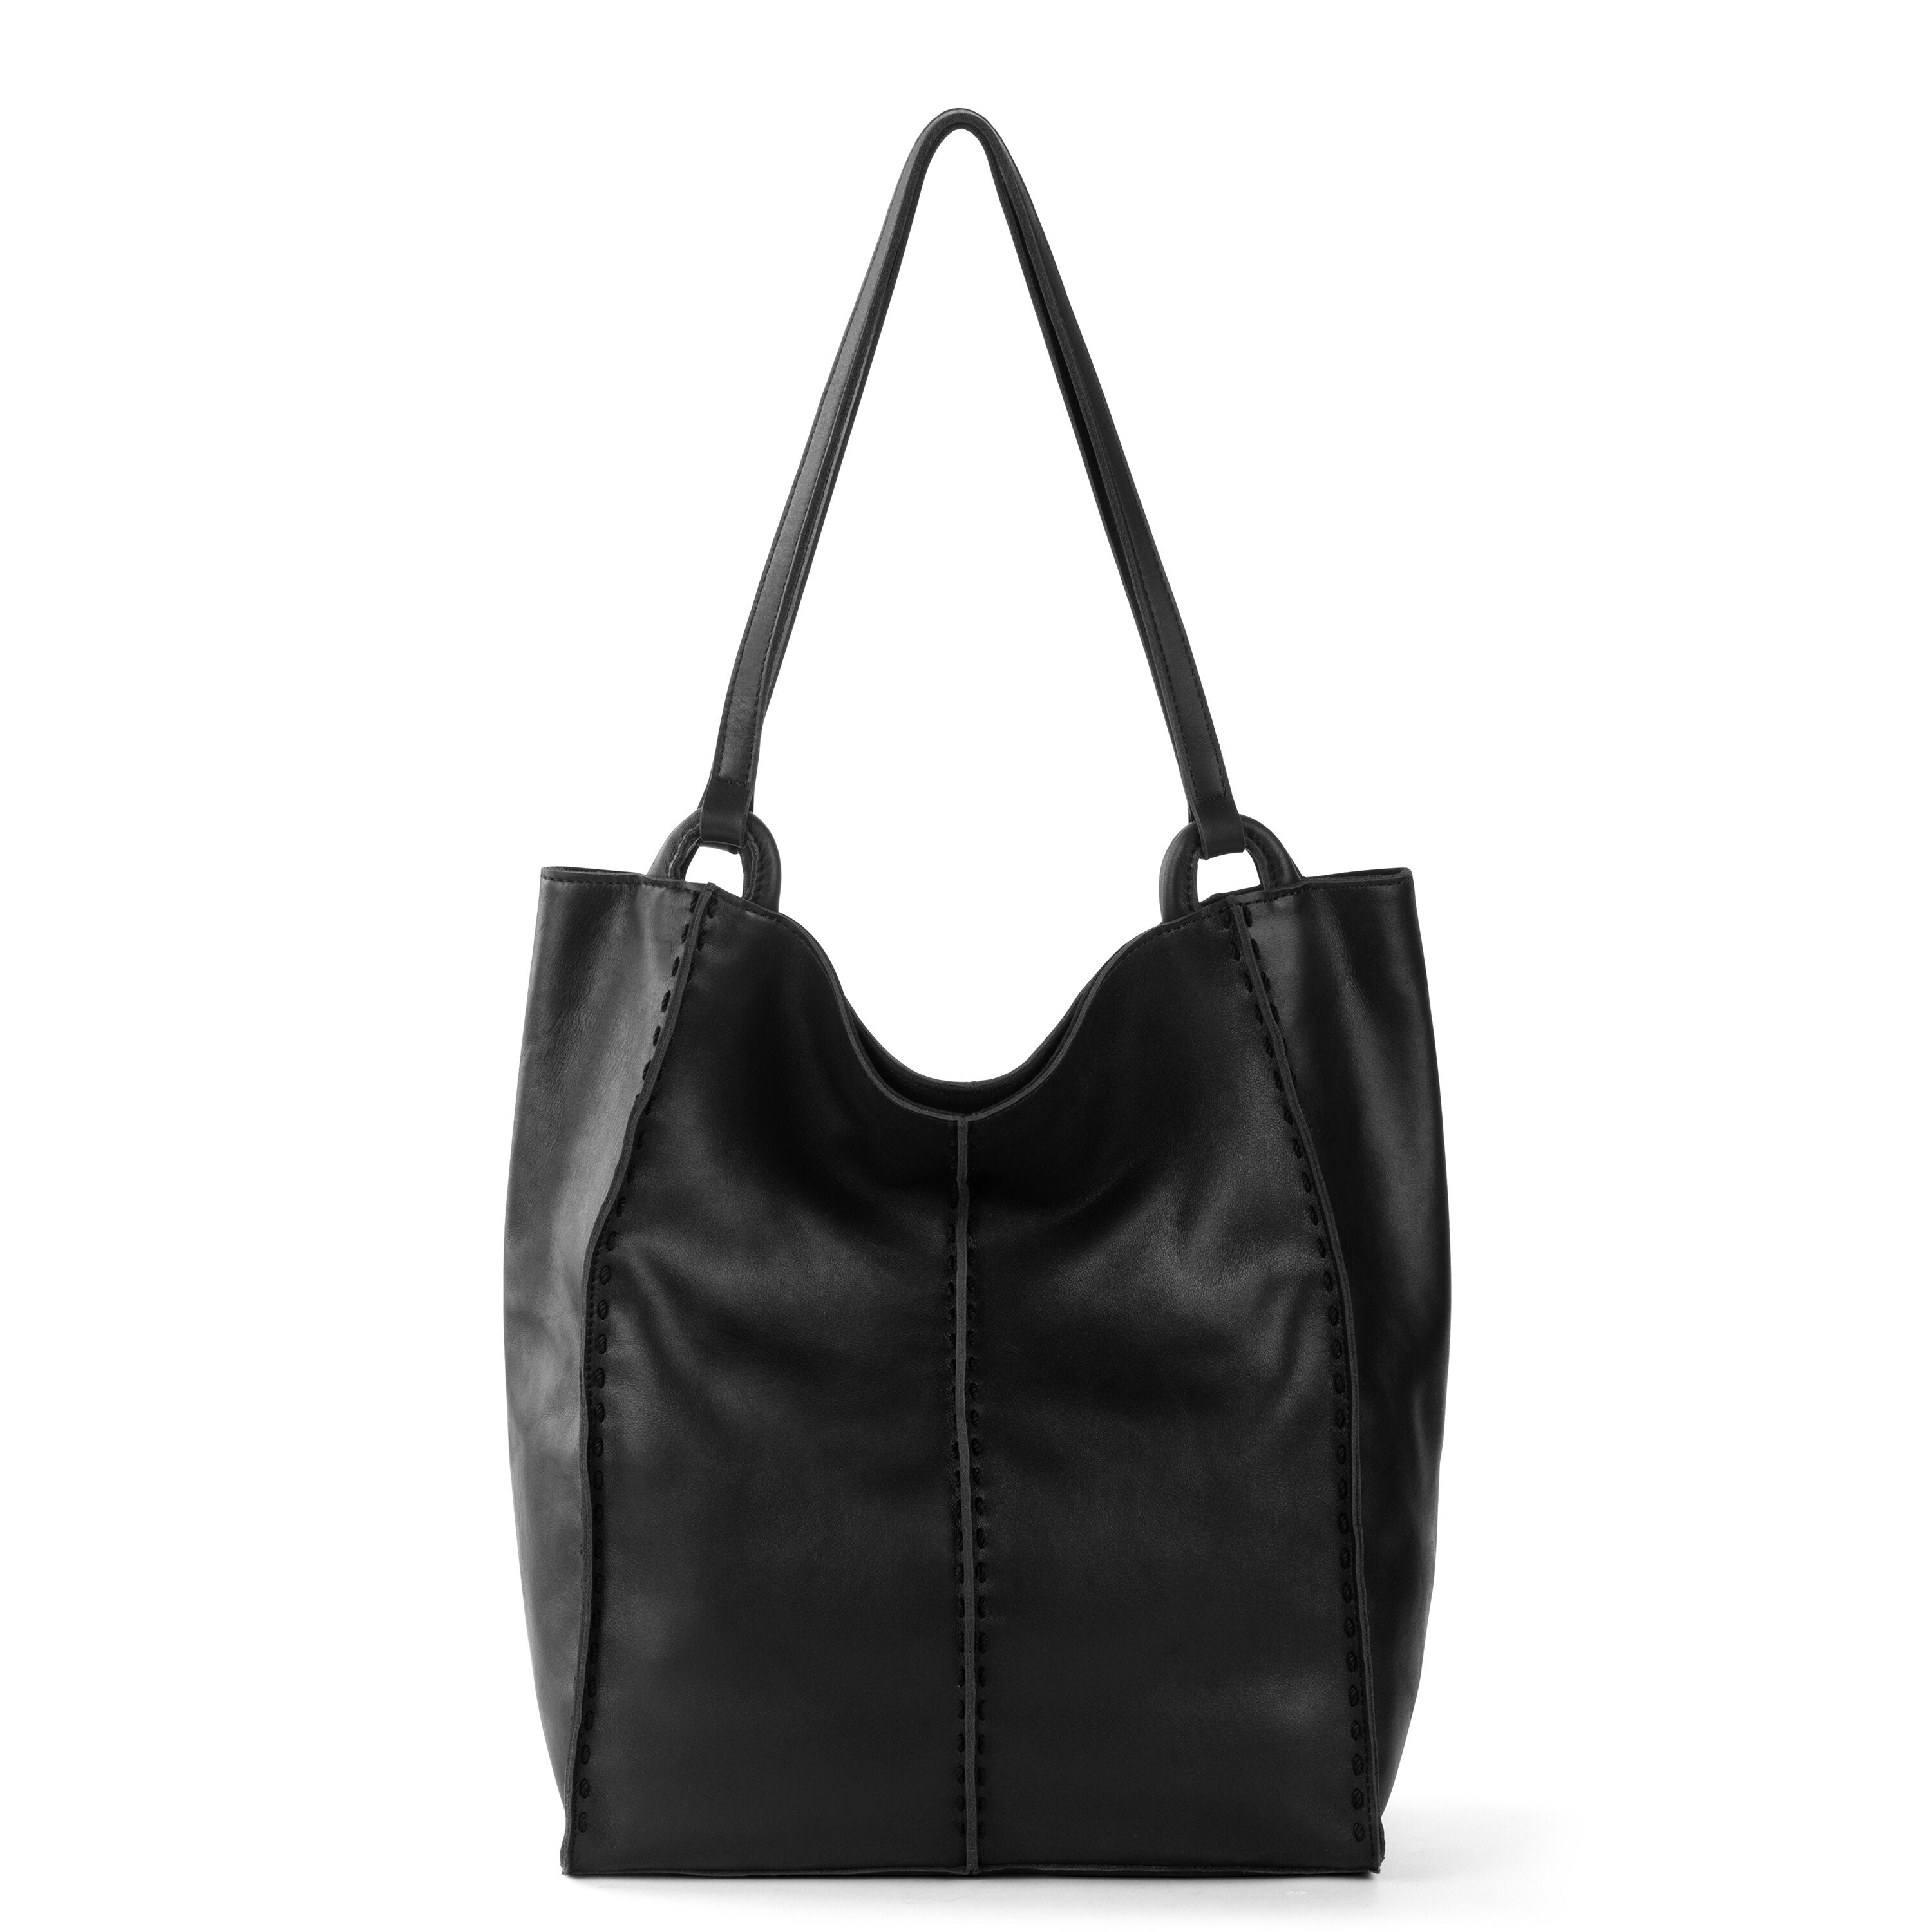 Premium Soft Glitter Floral Black Satchel Top Handle Shoulder Bag Handbag